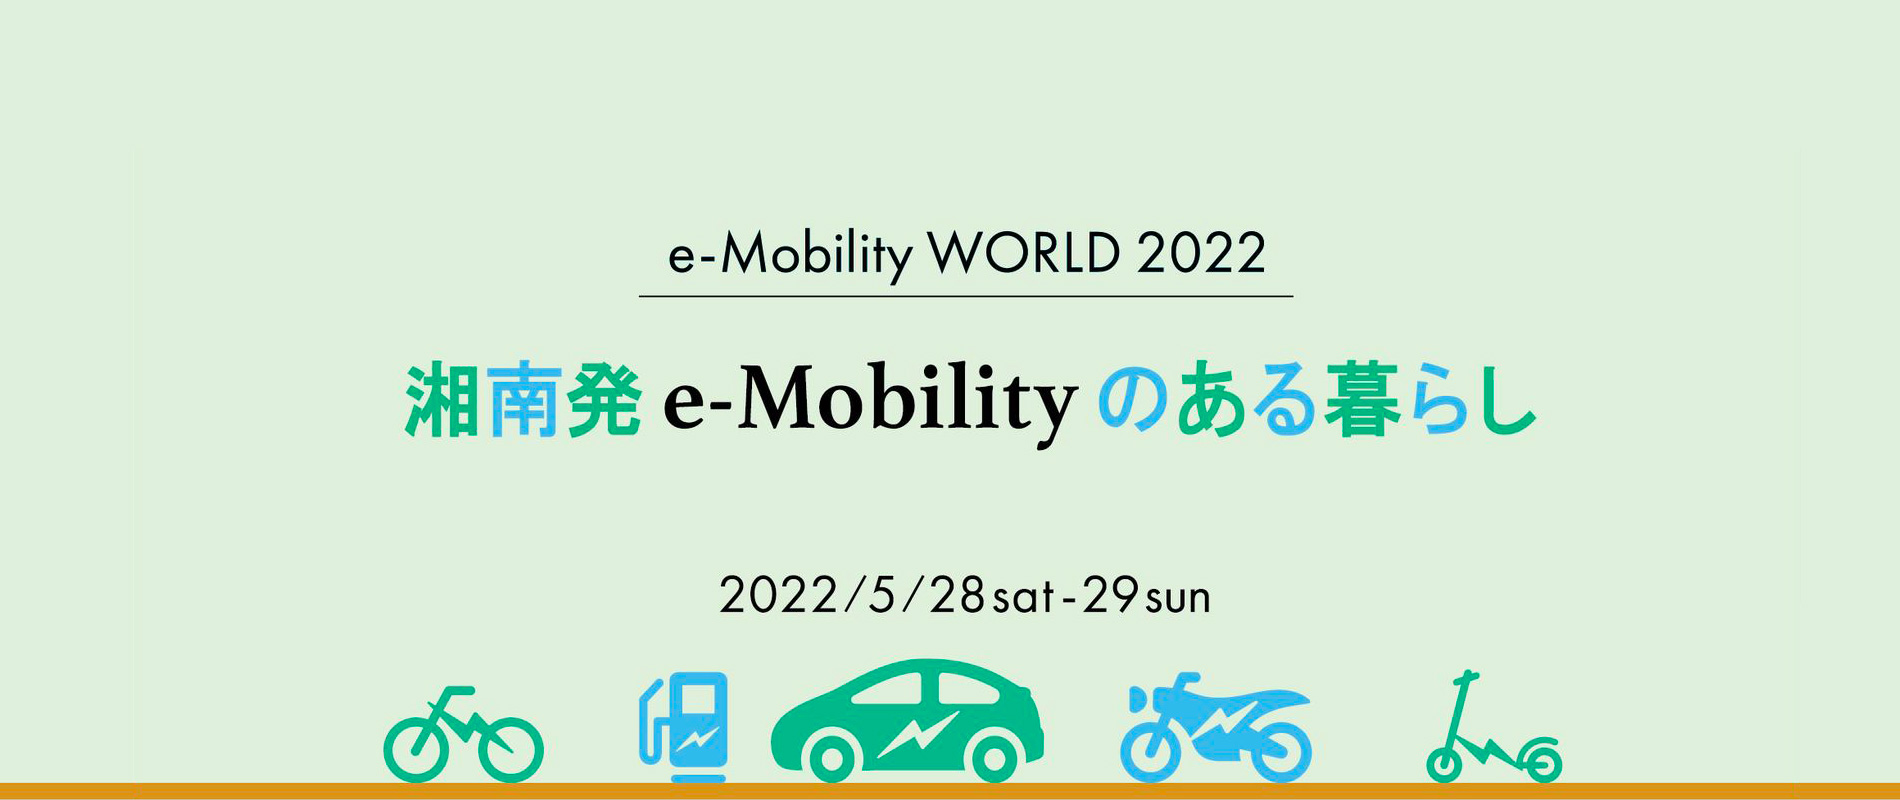 一般社団法人 e-Mobility協会